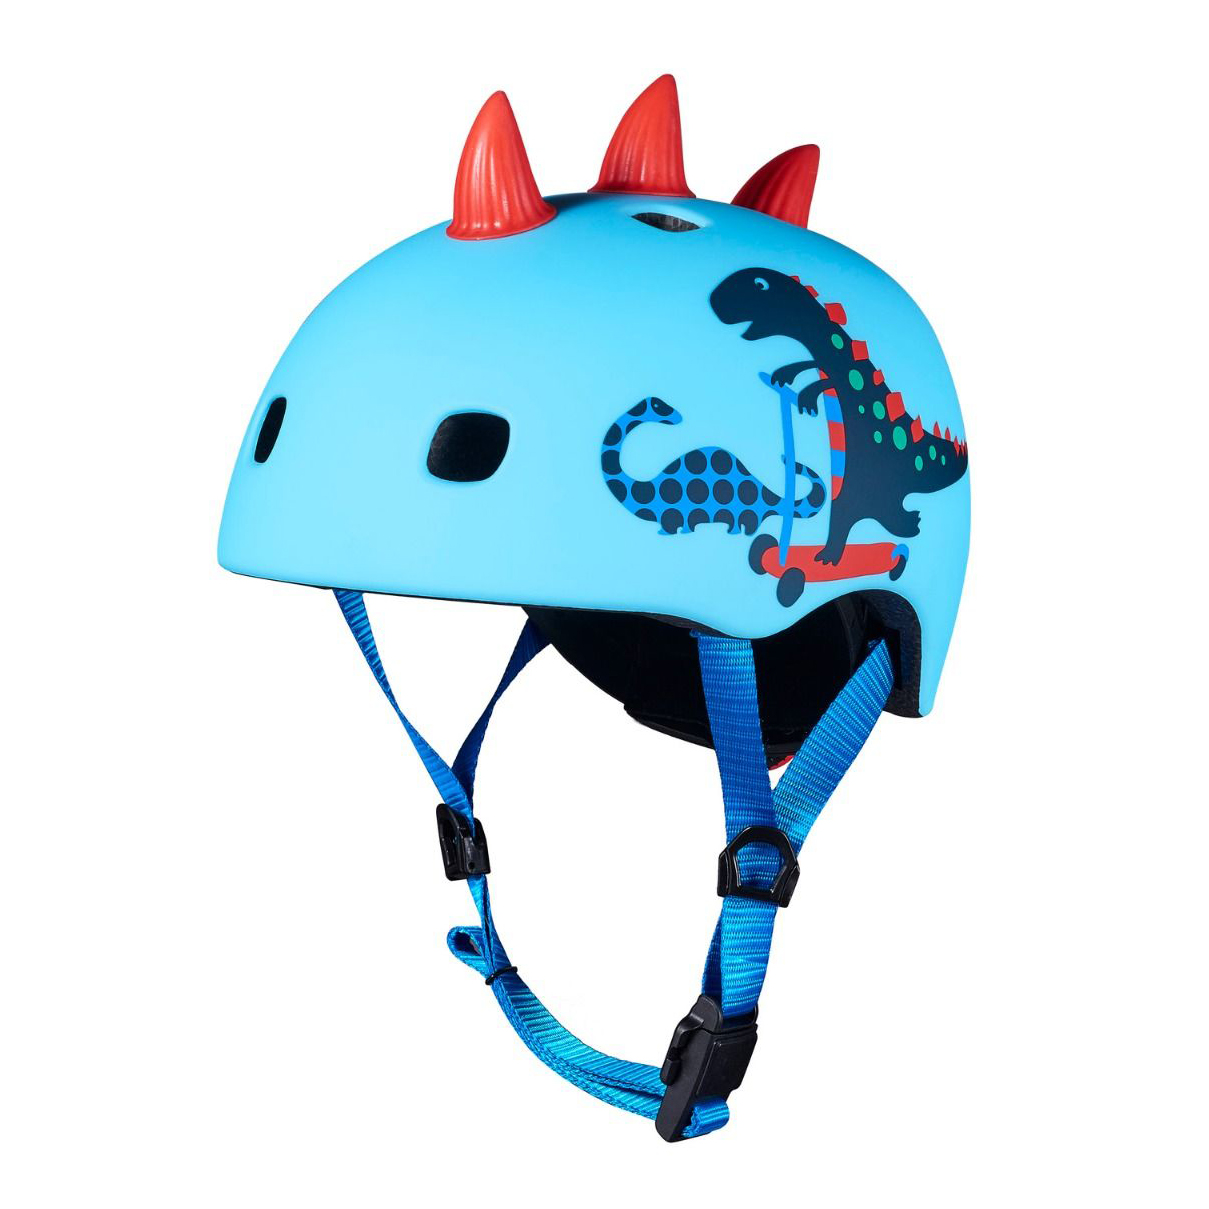 MICRO Helmet 3D Scootersaurus Action-Bikes